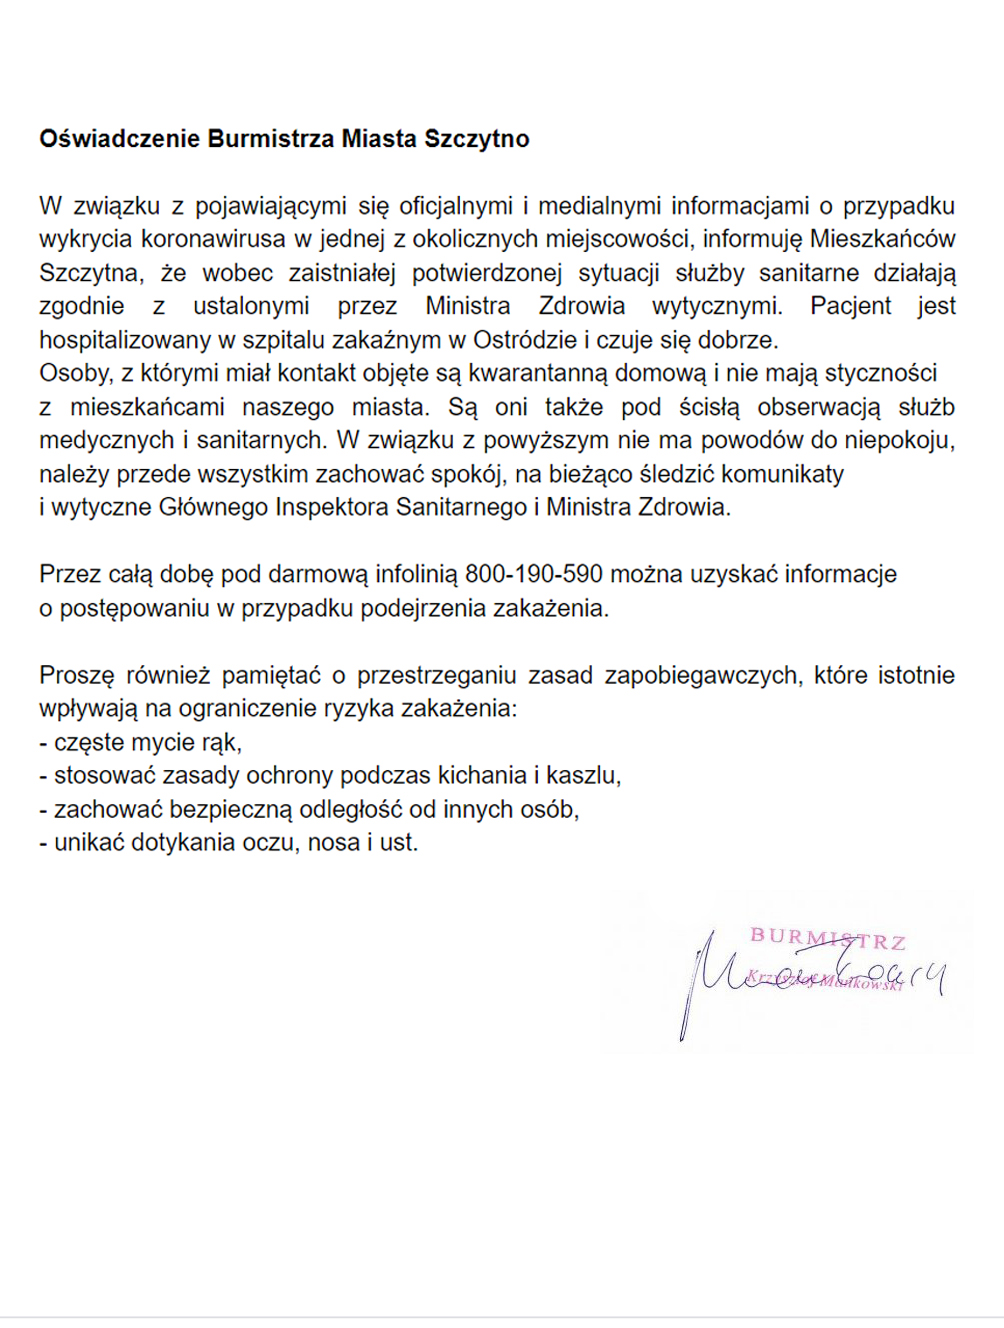 https://m.powiatszczycienski.pl/2020/03/orig/burmistrz-oswiadczenie-28377.jpg